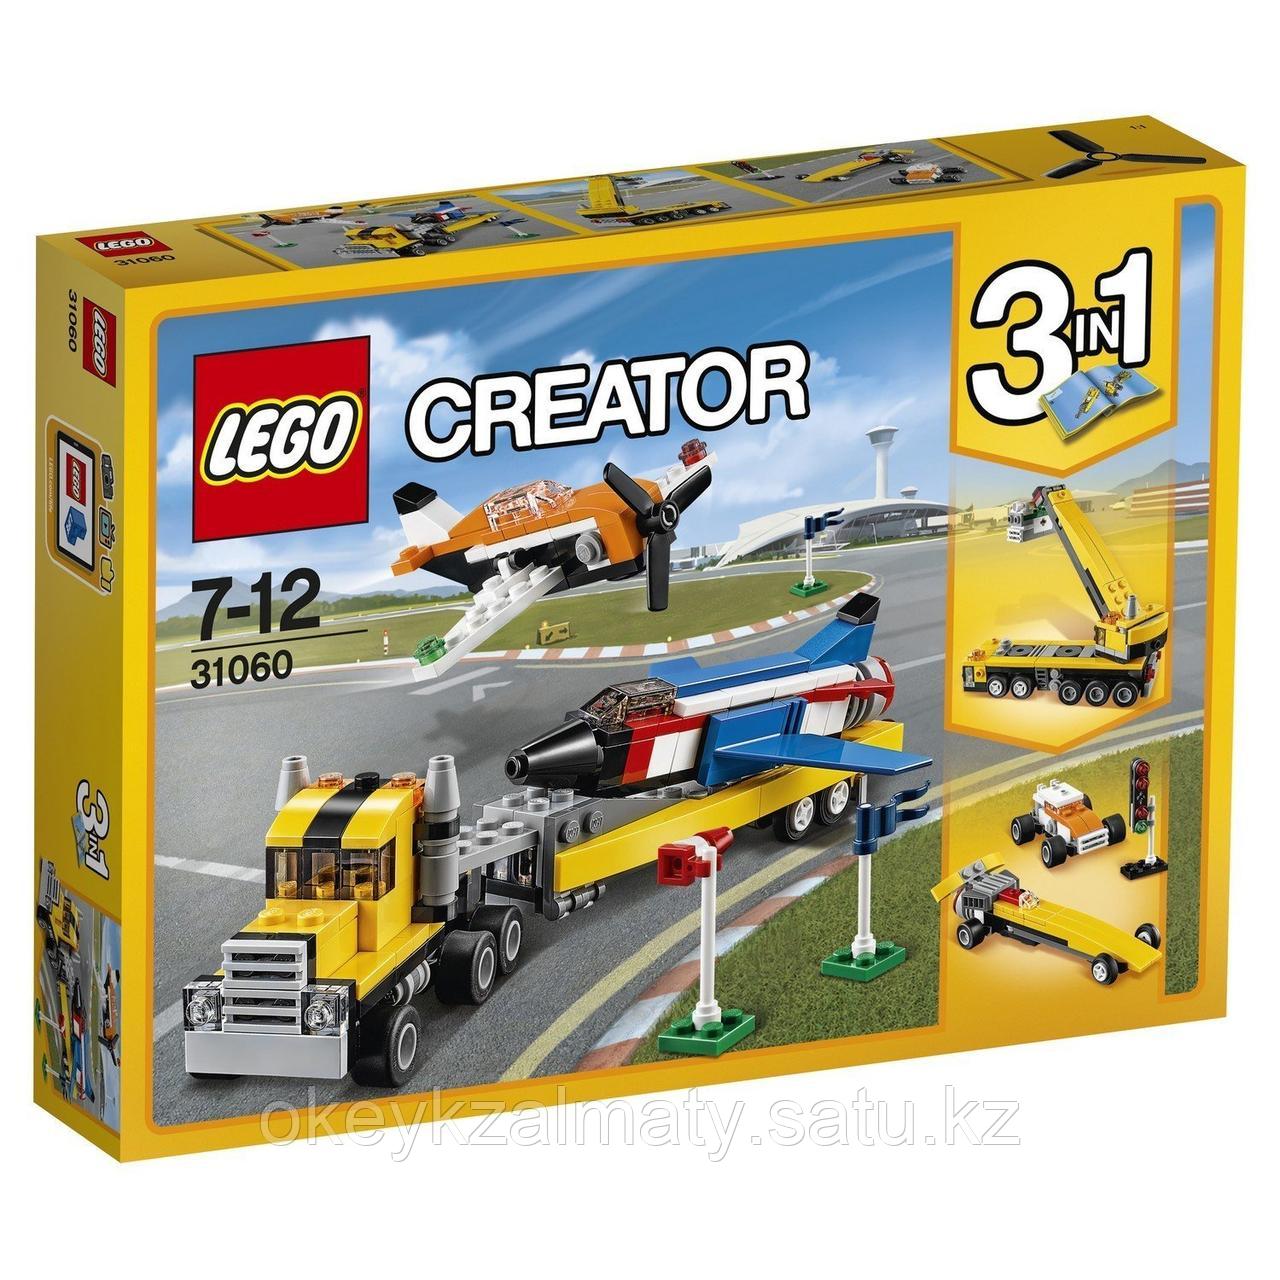 LEGO Creator: Пилотажная группа 31060